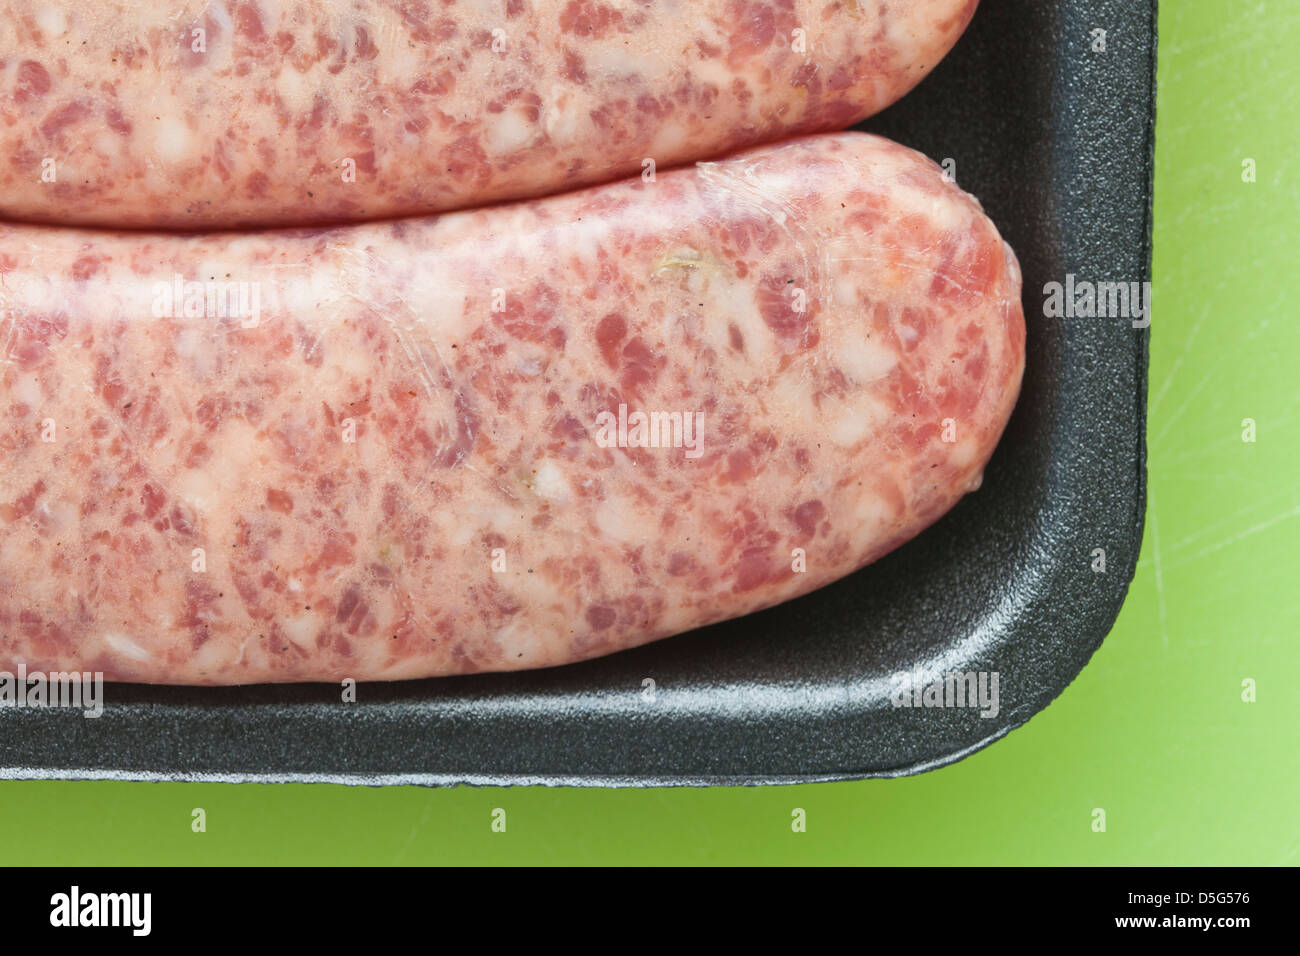 Rohes Fleisch Wurst, Brat, aus schwarzem Kunststoff auf grünem Hintergrund Stockfoto